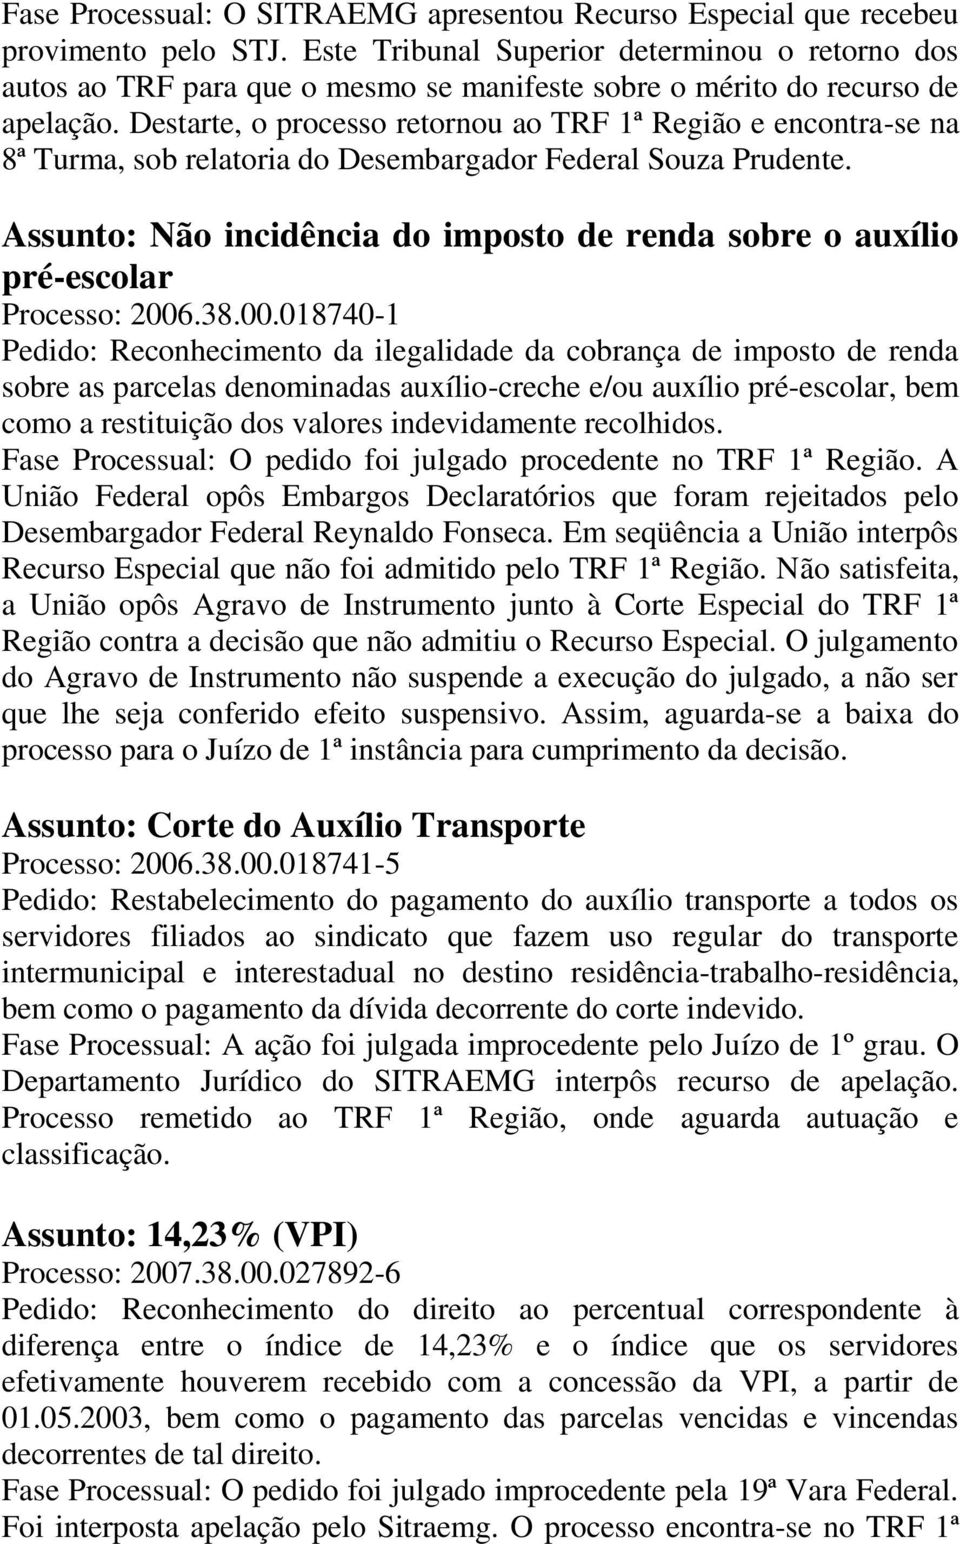 Destarte, o processo retornou ao TRF 1ª Região e encontra-se na 8ª Turma, sob relatoria do Desembargador Federal Souza Prudente.